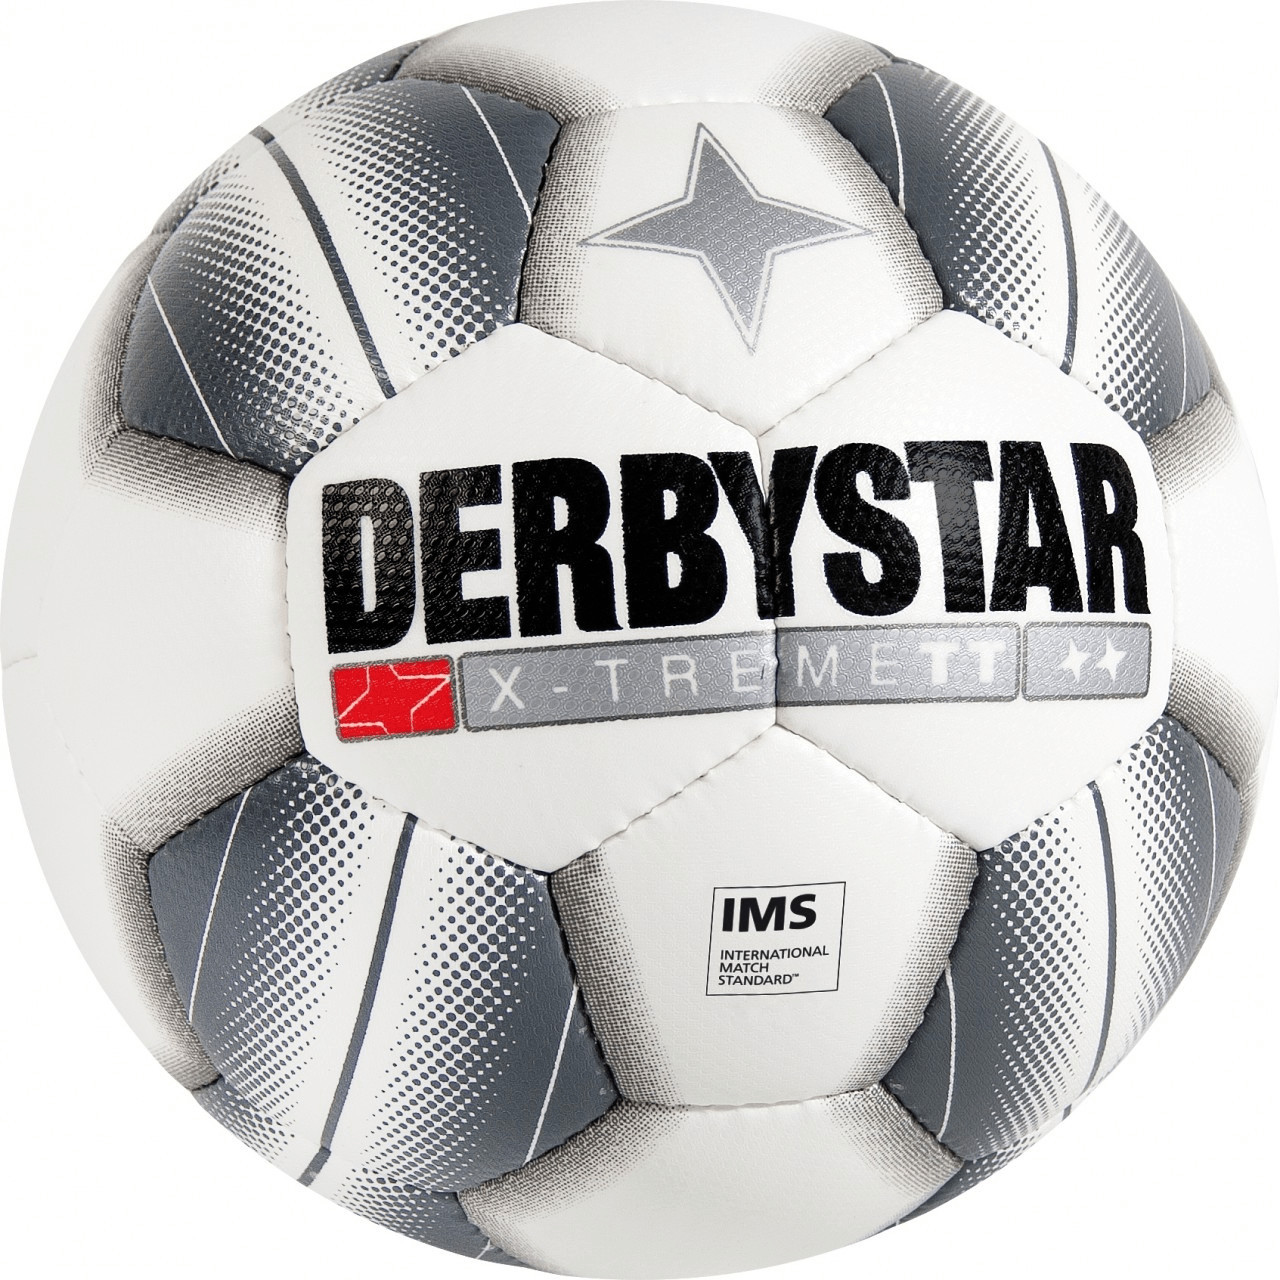 Derbystar Apus TT ab 19,19 € | Preisvergleich bei